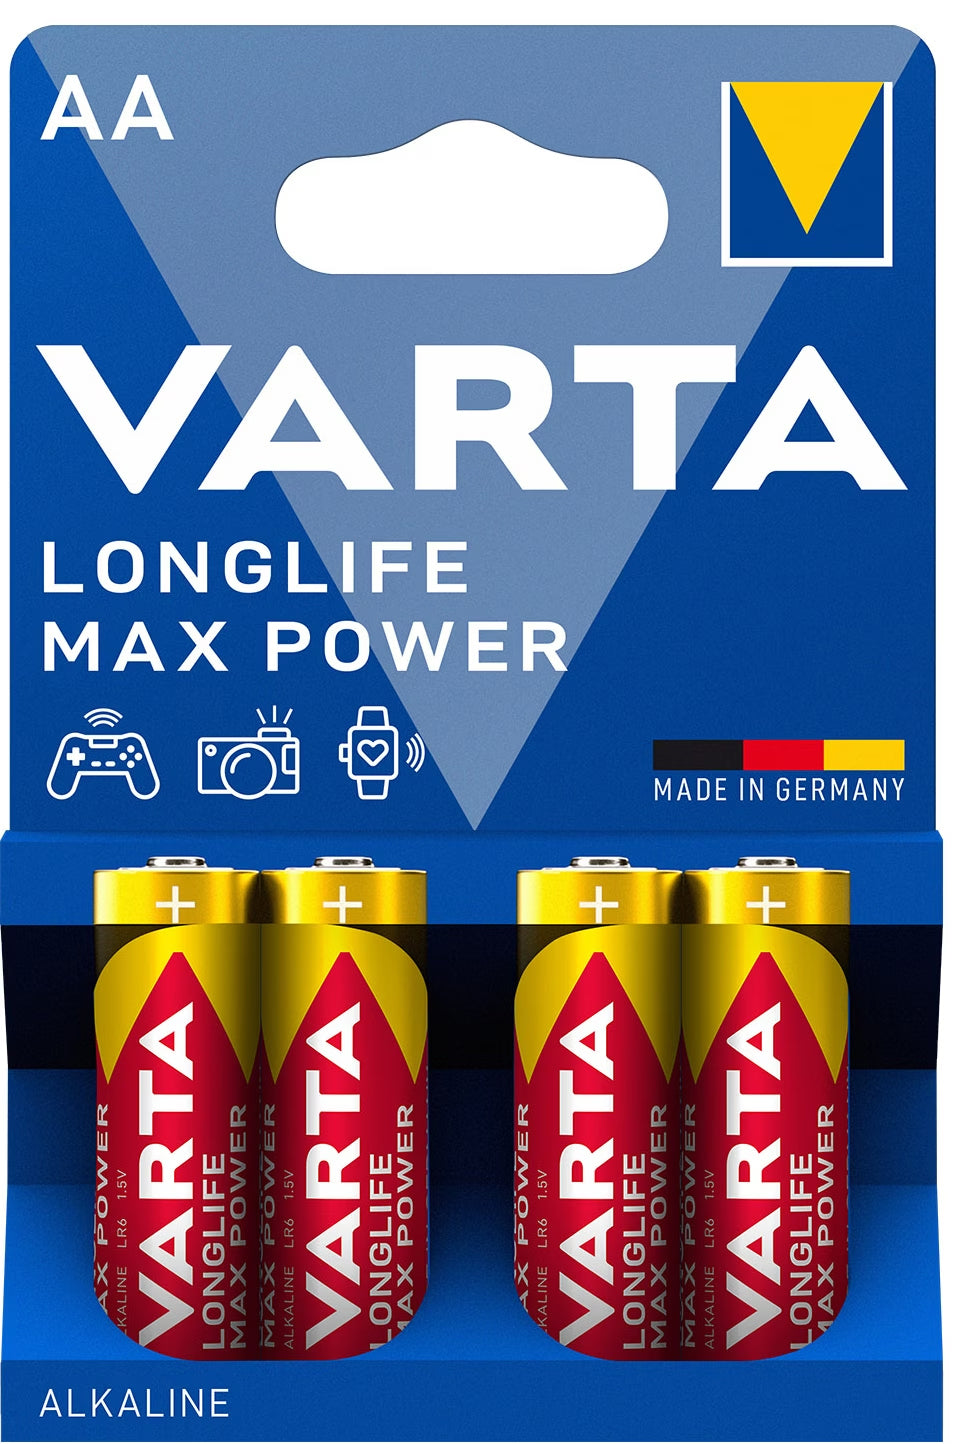 Varta 1x4 AA 1.5V Longlife Max Power Alkaline Batteries